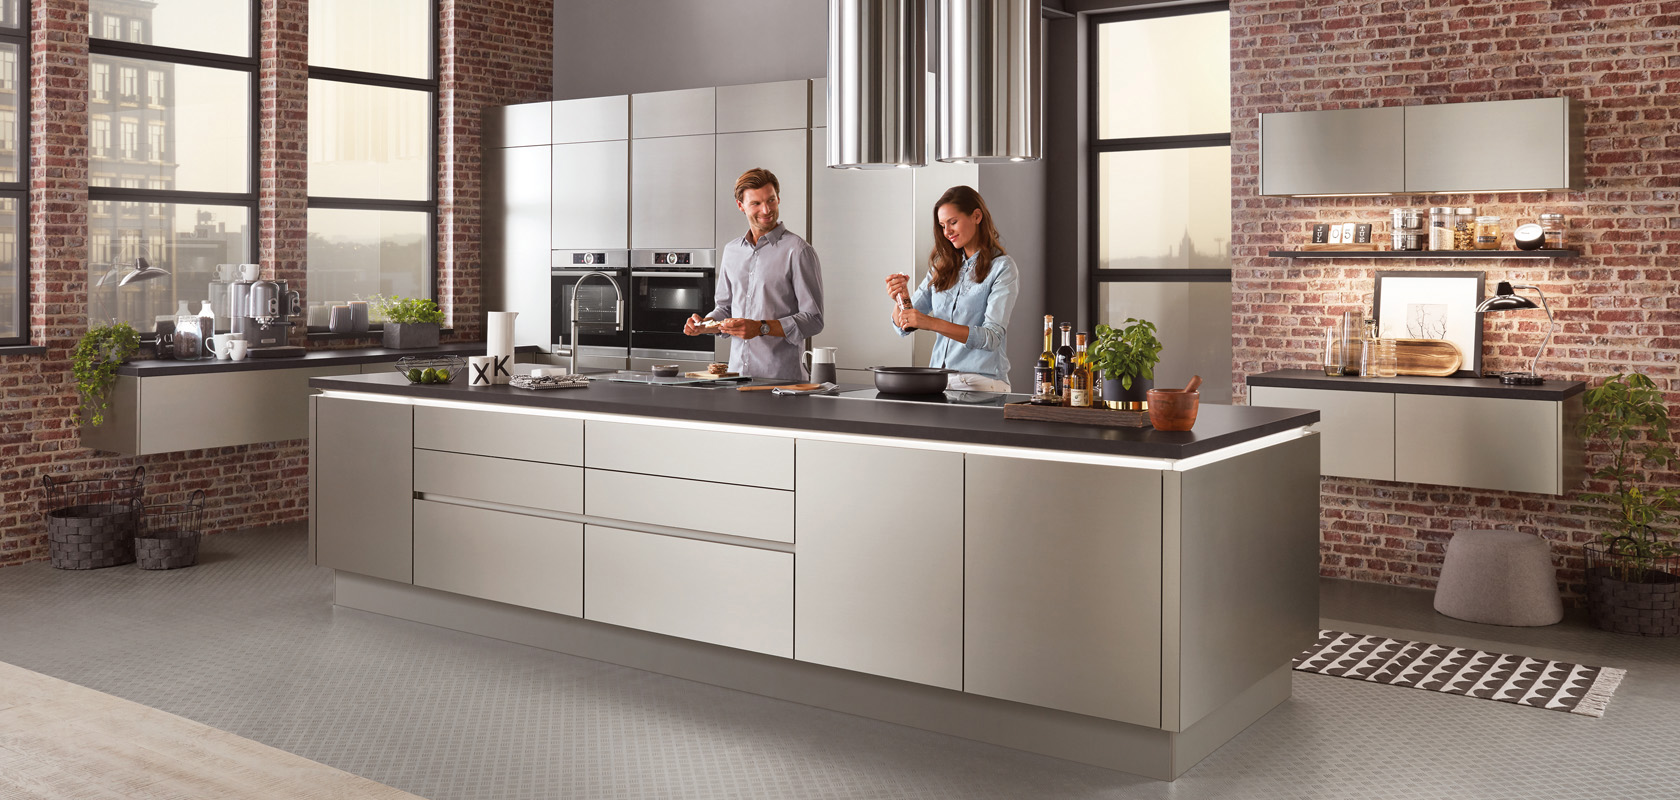 Un ambiente cucina moderno con una coppia che cucina insieme, con elettrodomestici in acciaio inossidabile, mobili eleganti e uno sfondo di mattoni dallo stile industriale-chic.